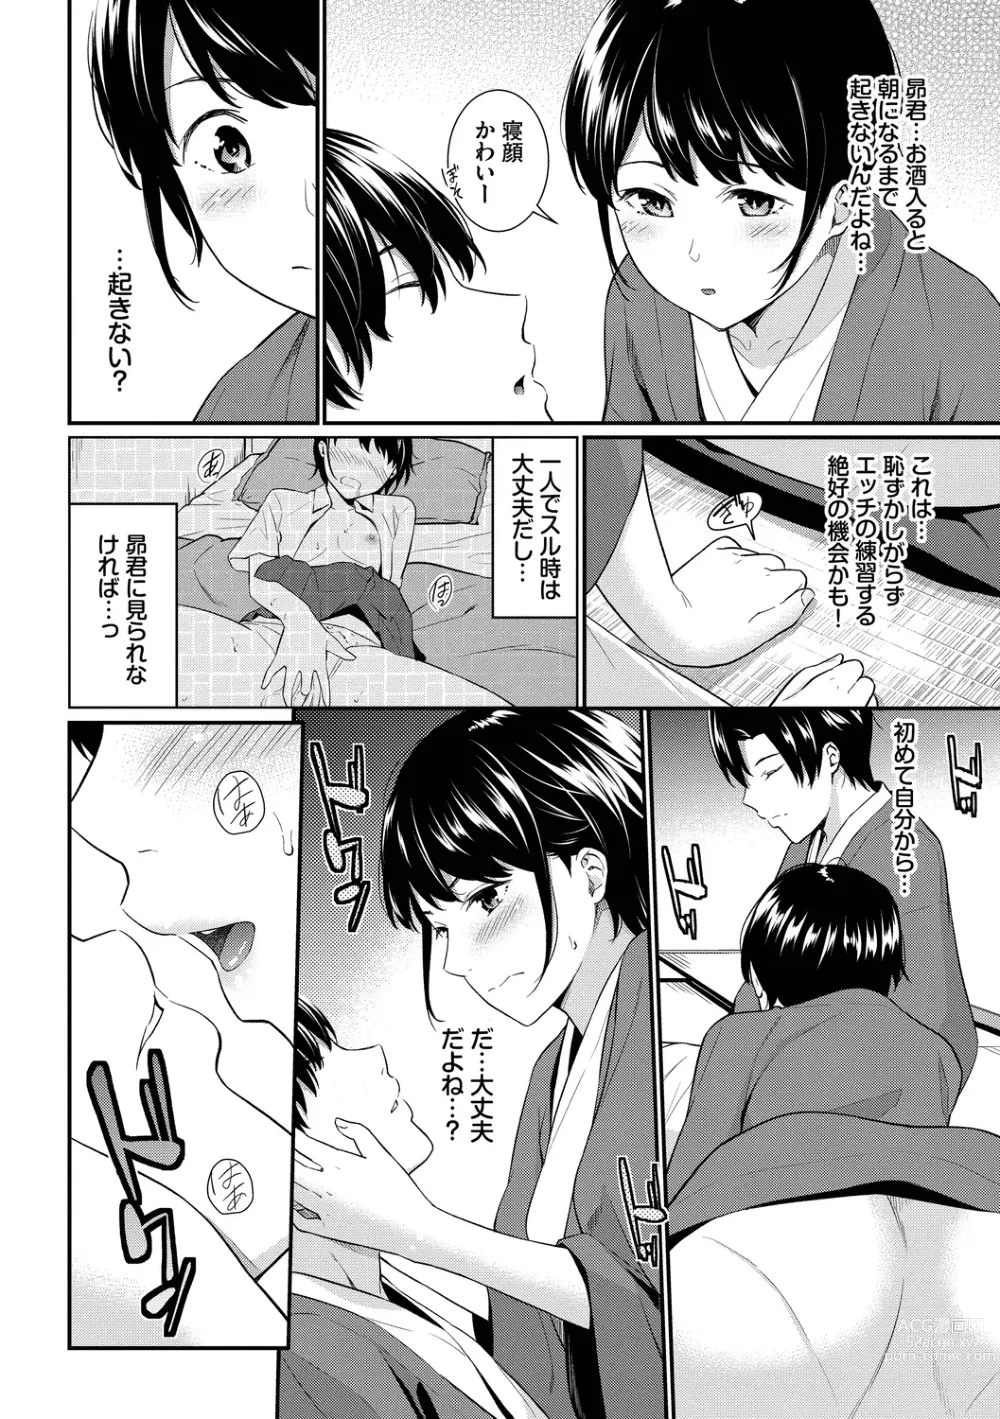 Page 28 of manga Hajirai Limit